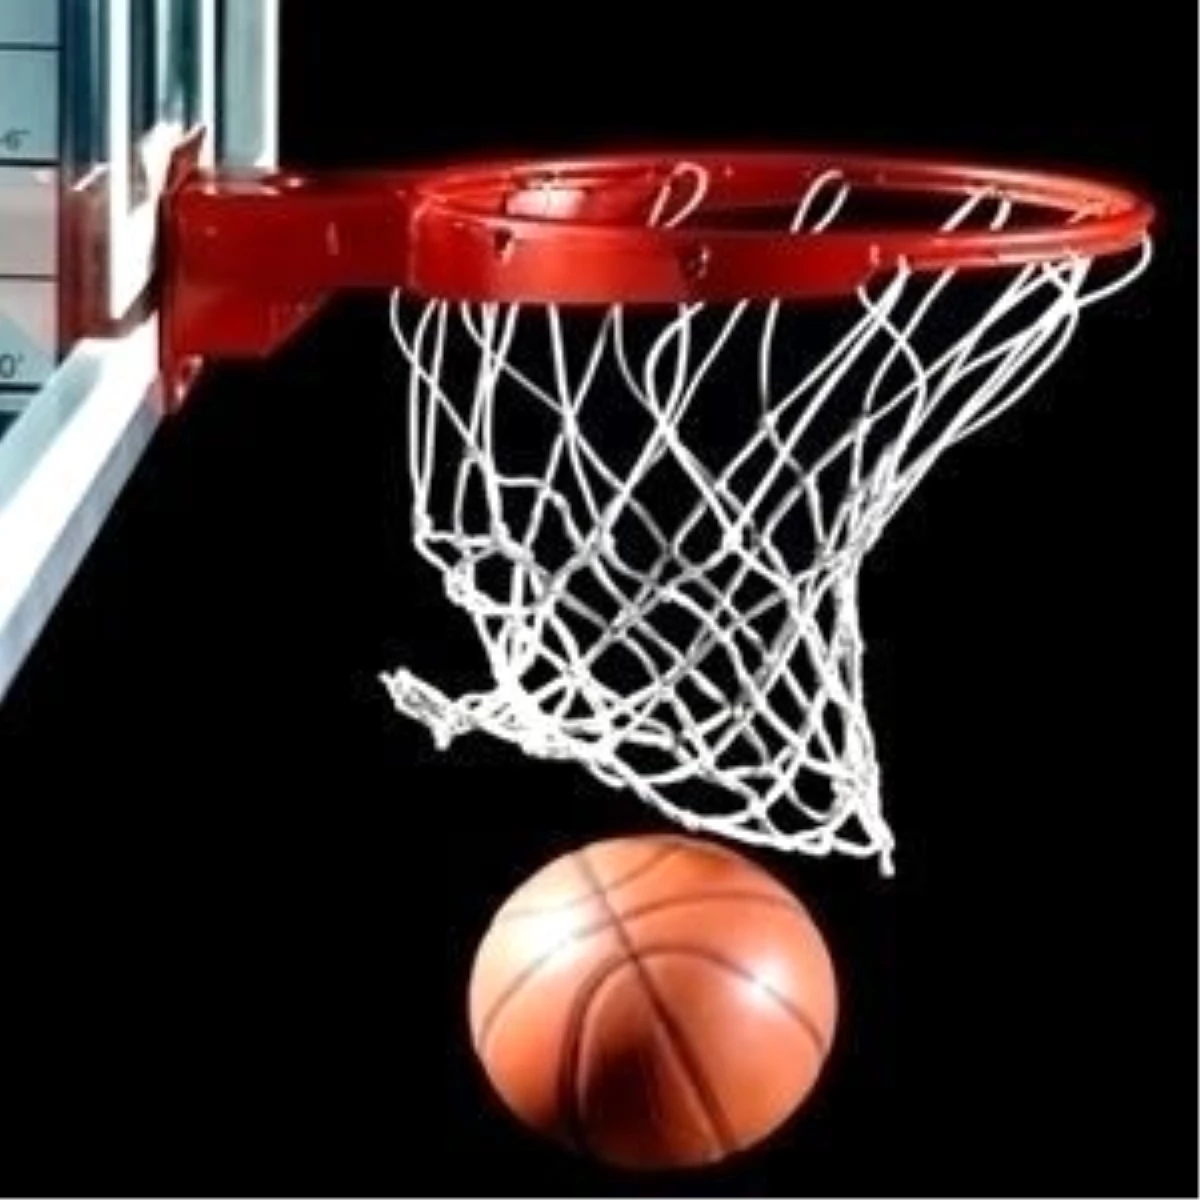 Basketbol